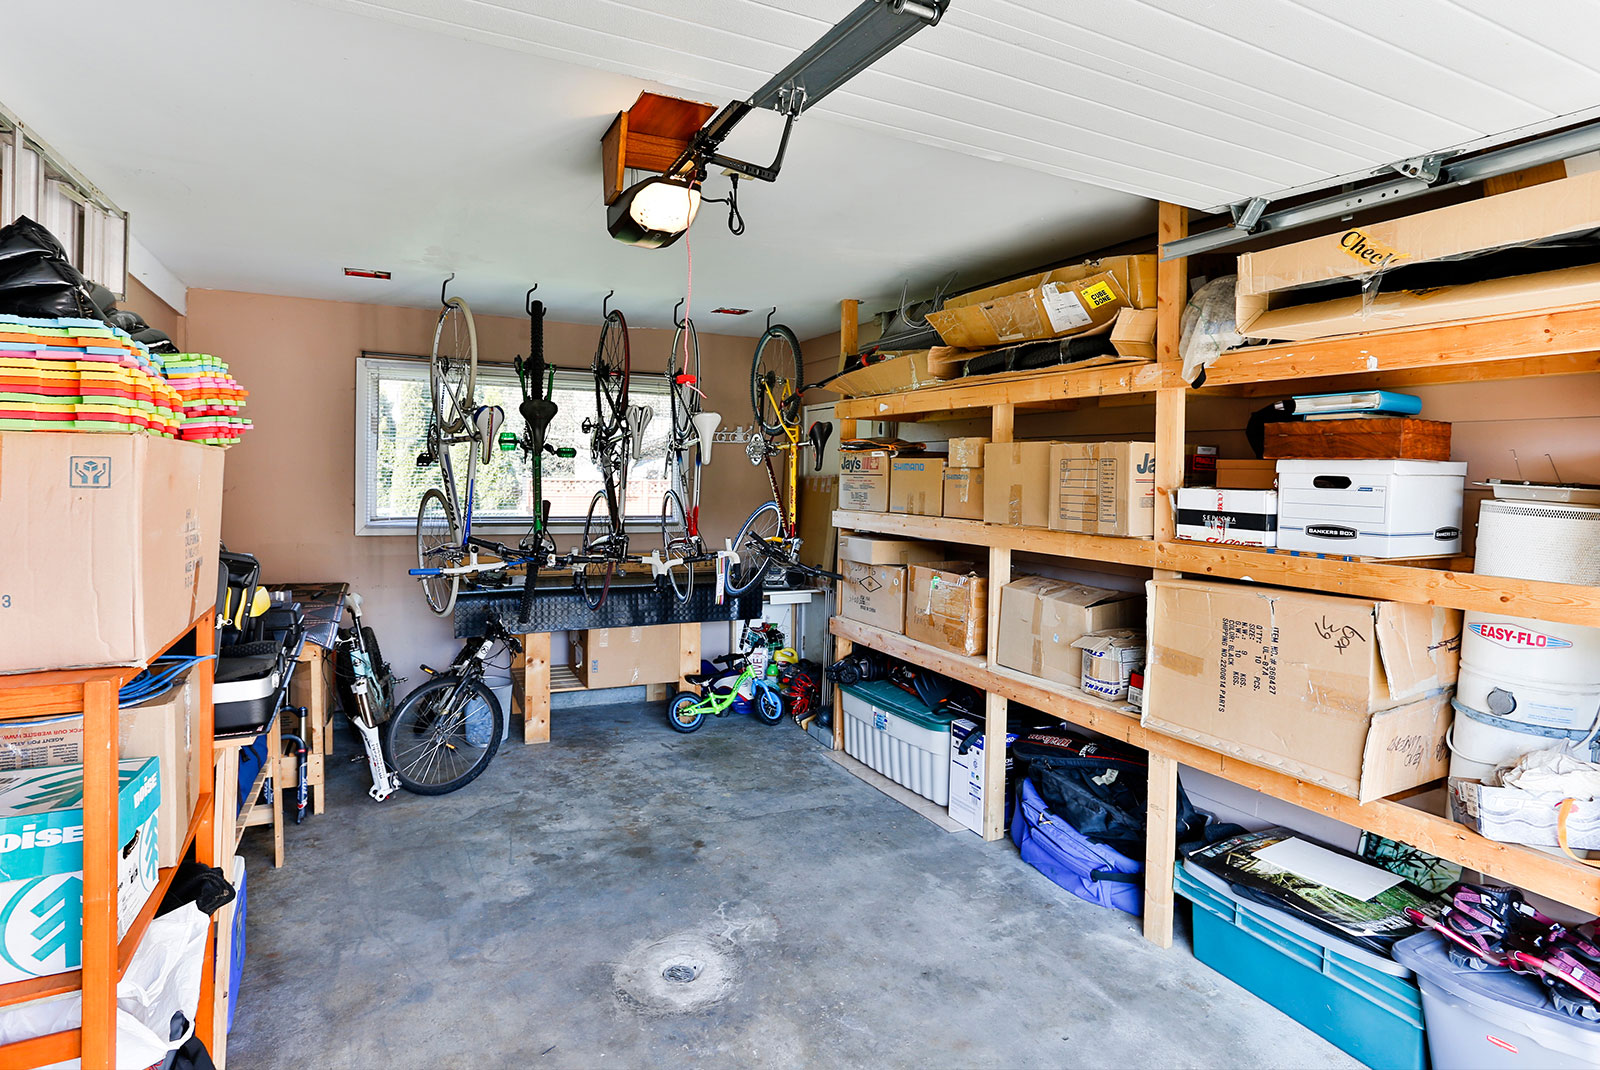 The Organized Garage